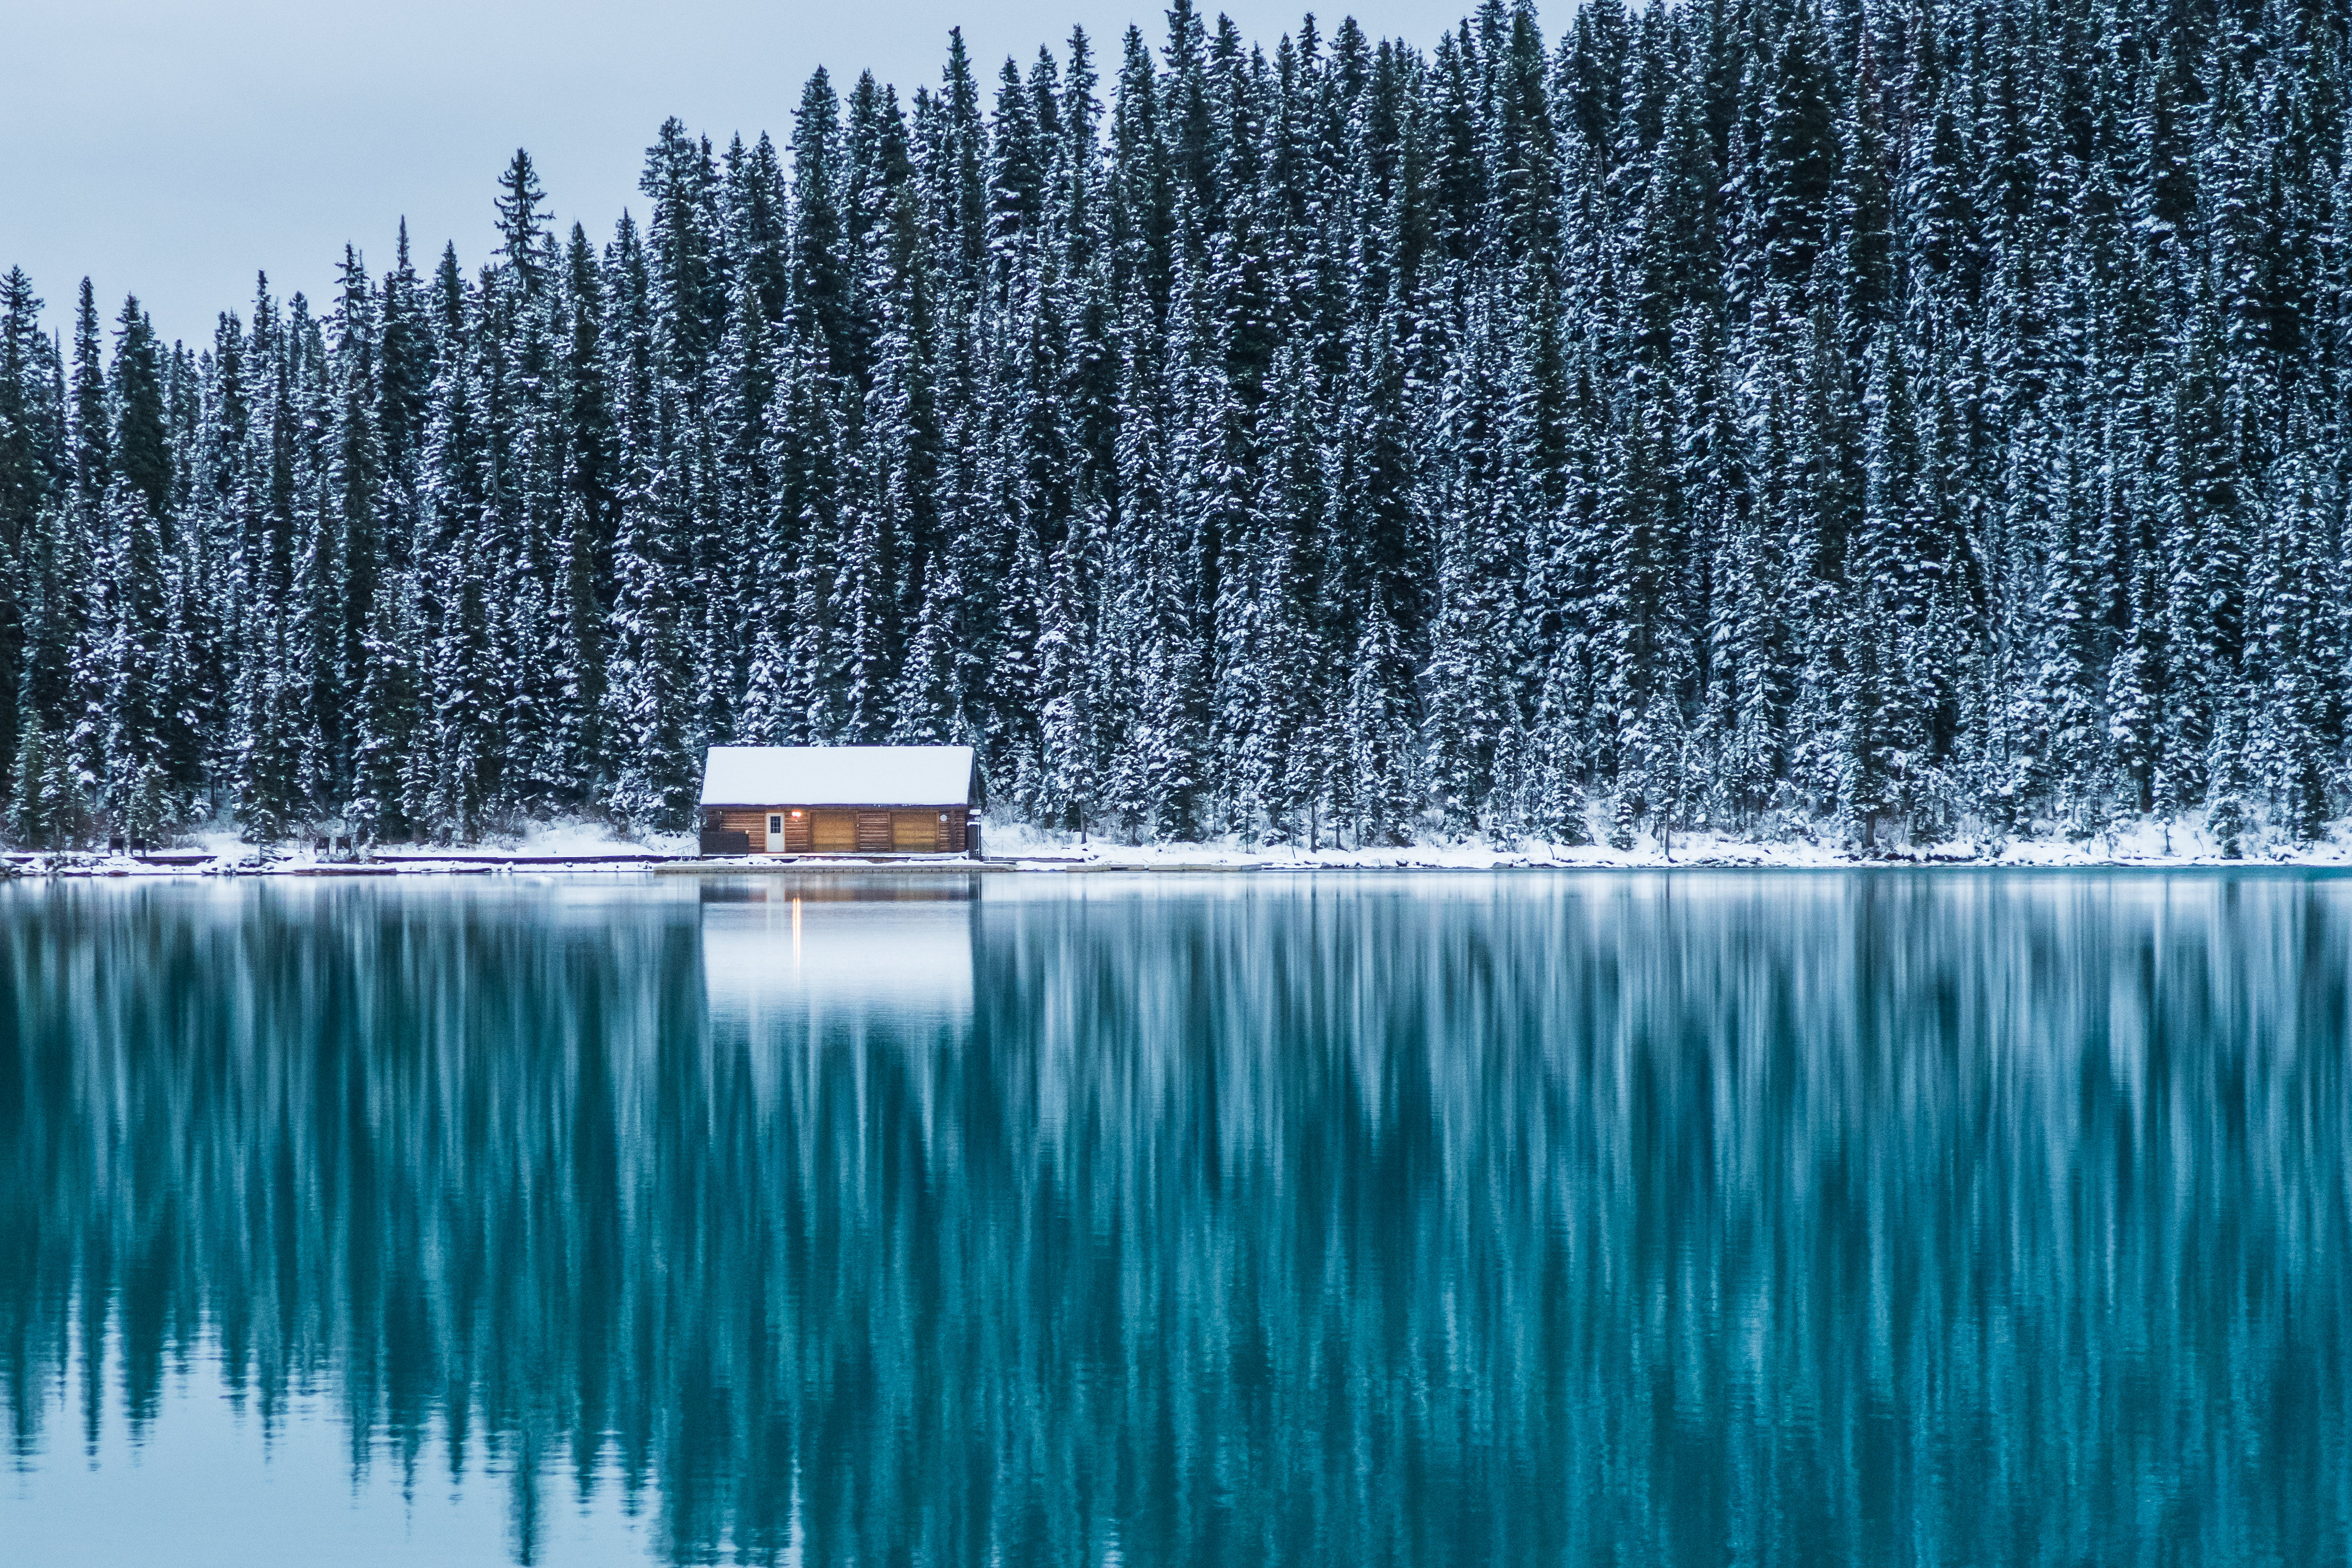 Lake Louise, Alberta, Canada by tmsfan24